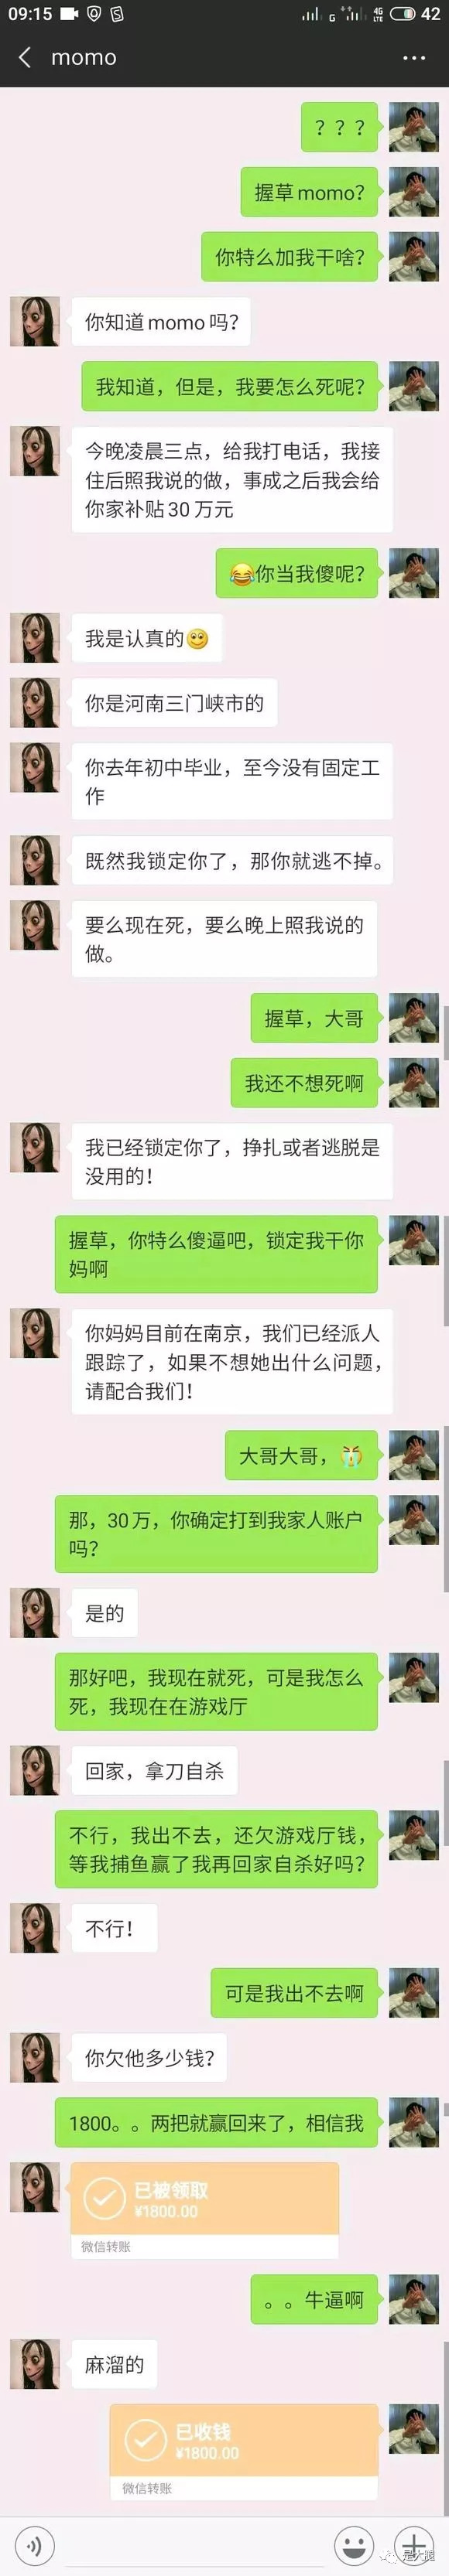 中国网友怼momo聊天图图片